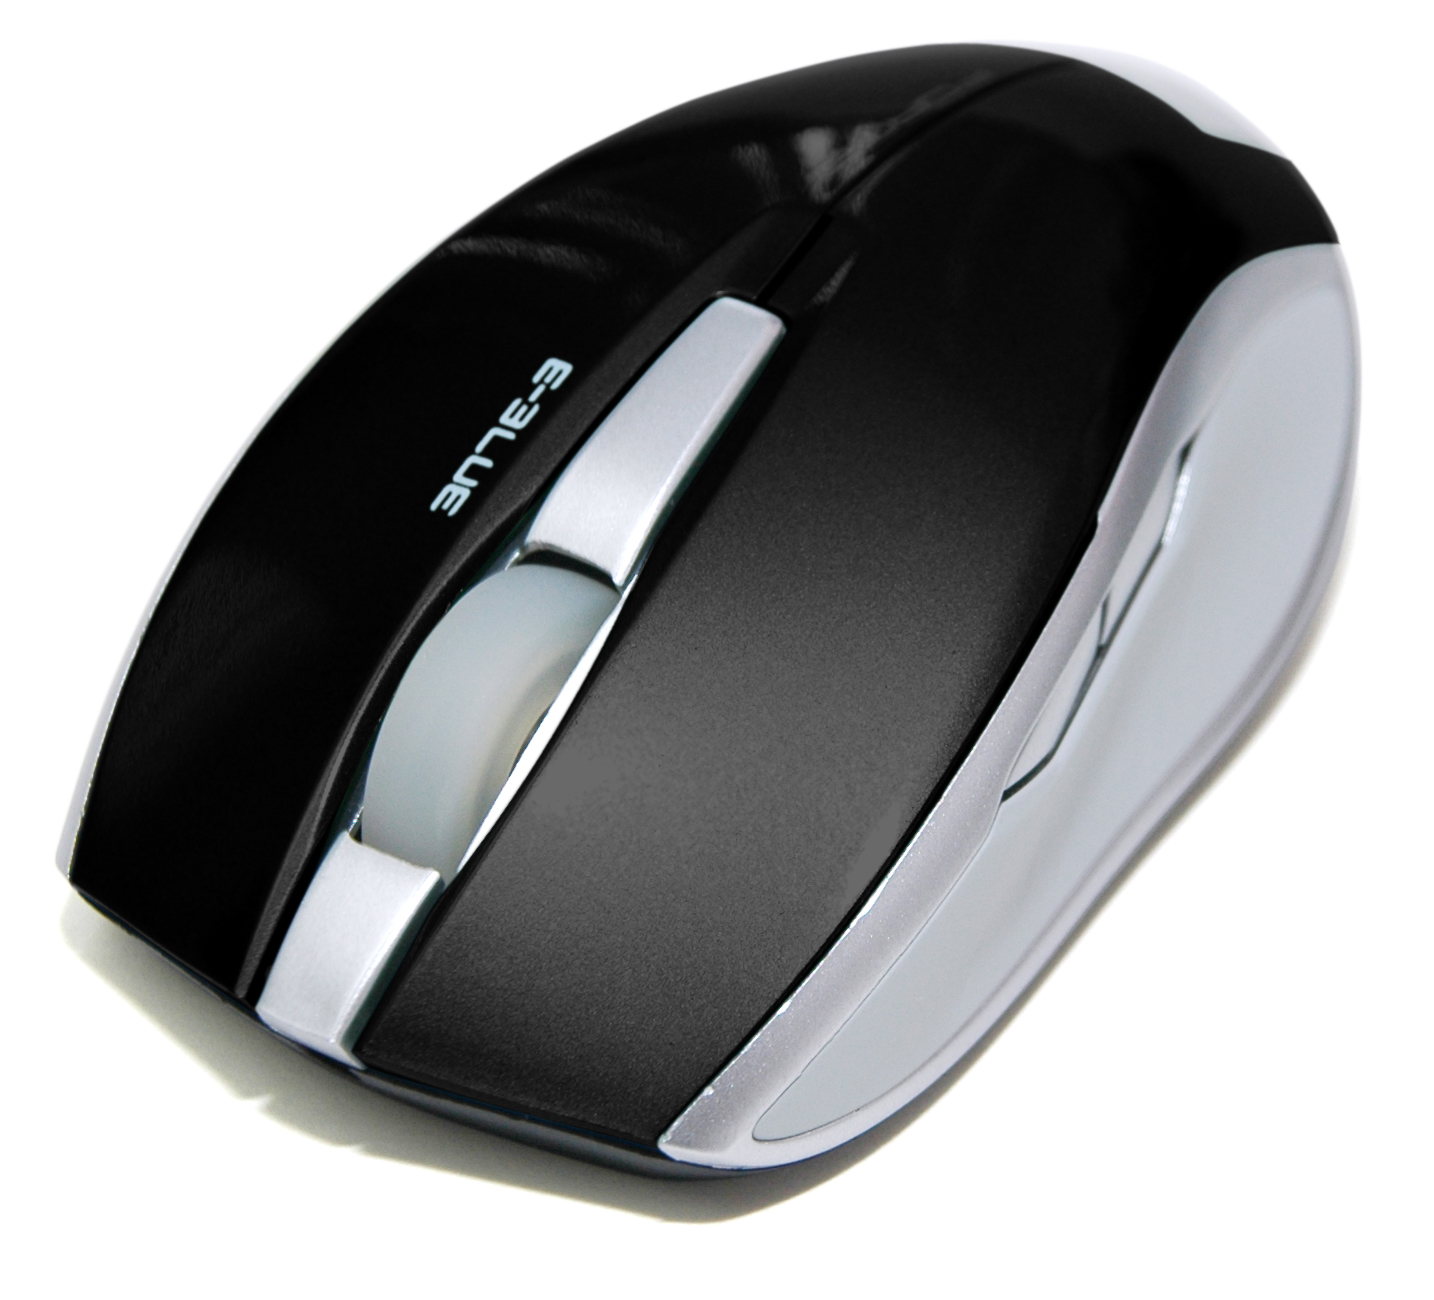 Forme G-Laser optical mouse